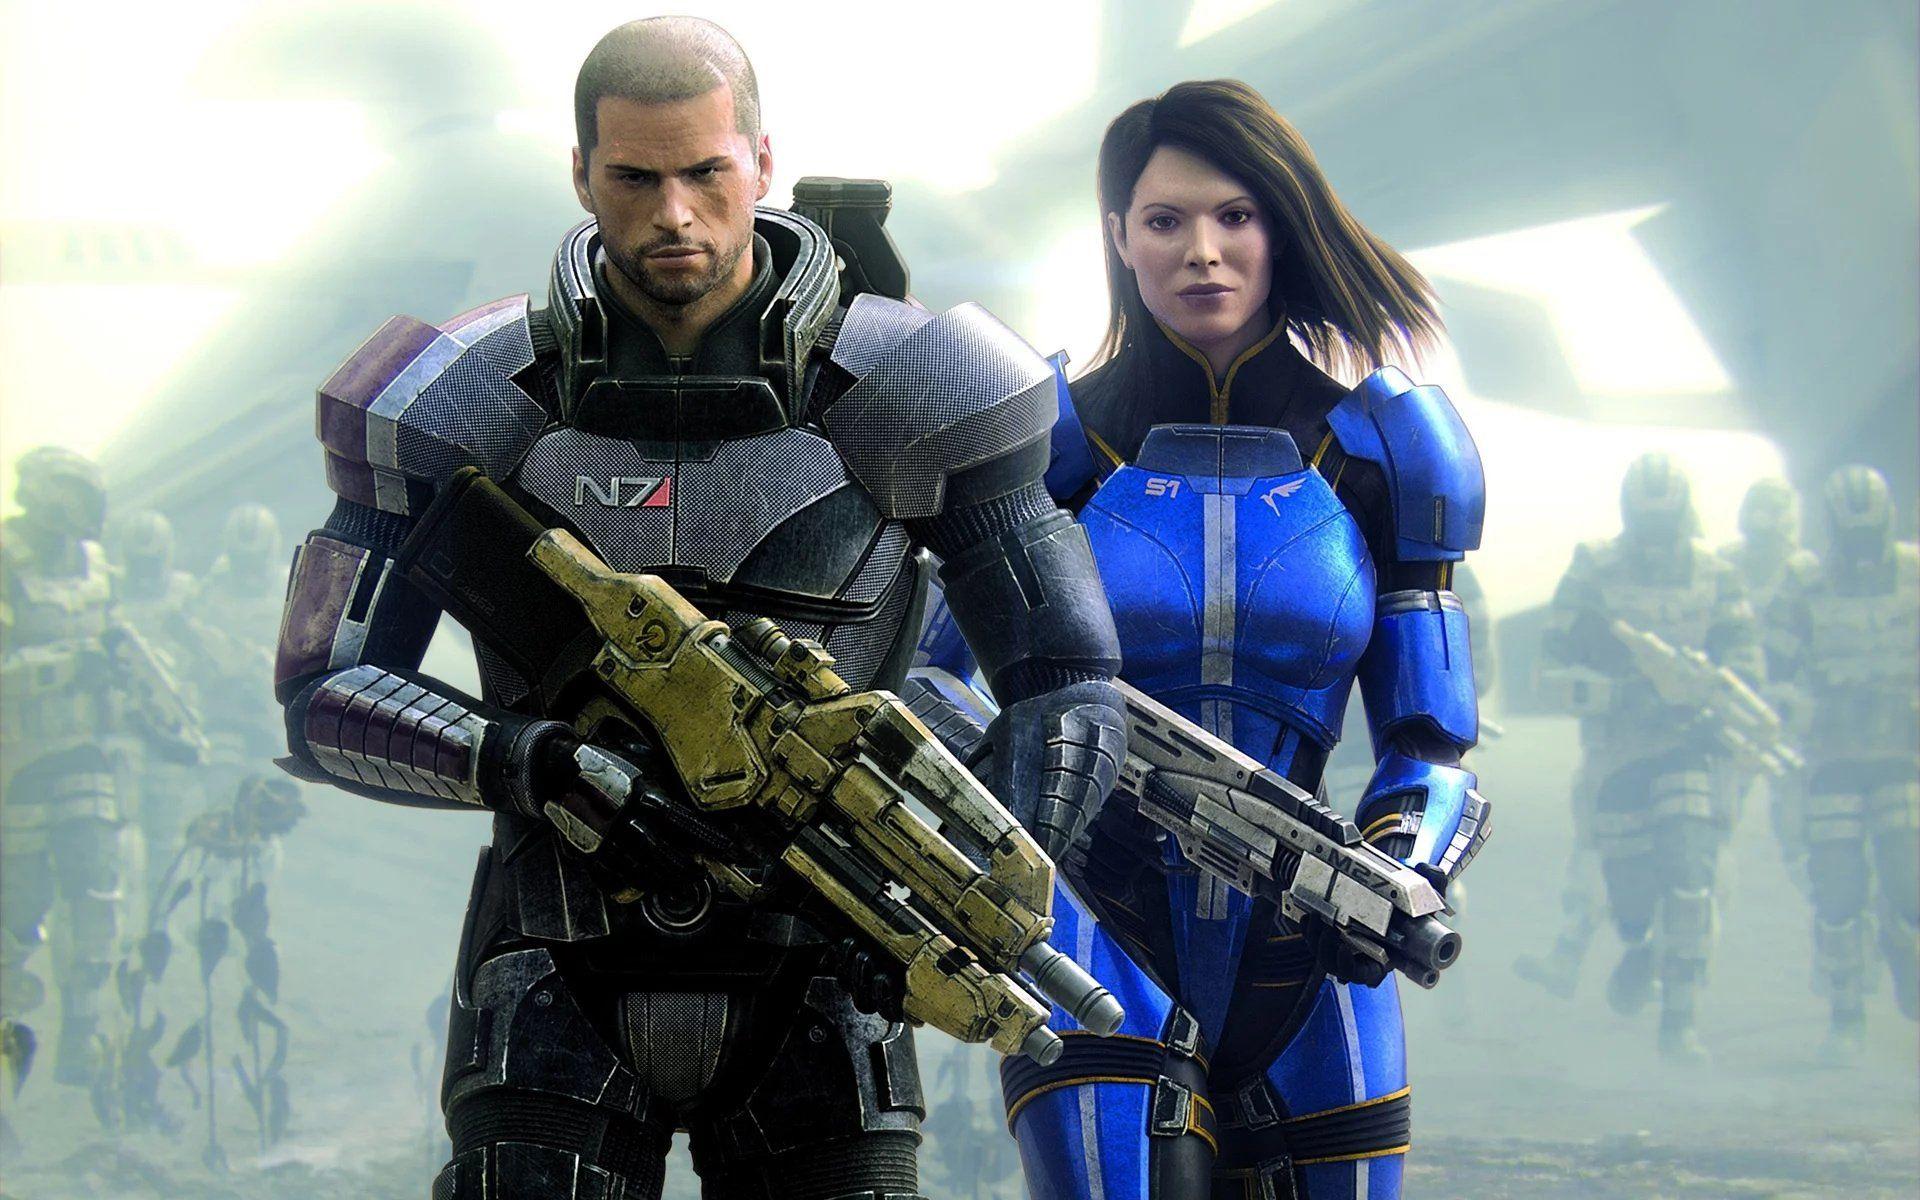 Mass Effect™ издание Legendary for iphone download